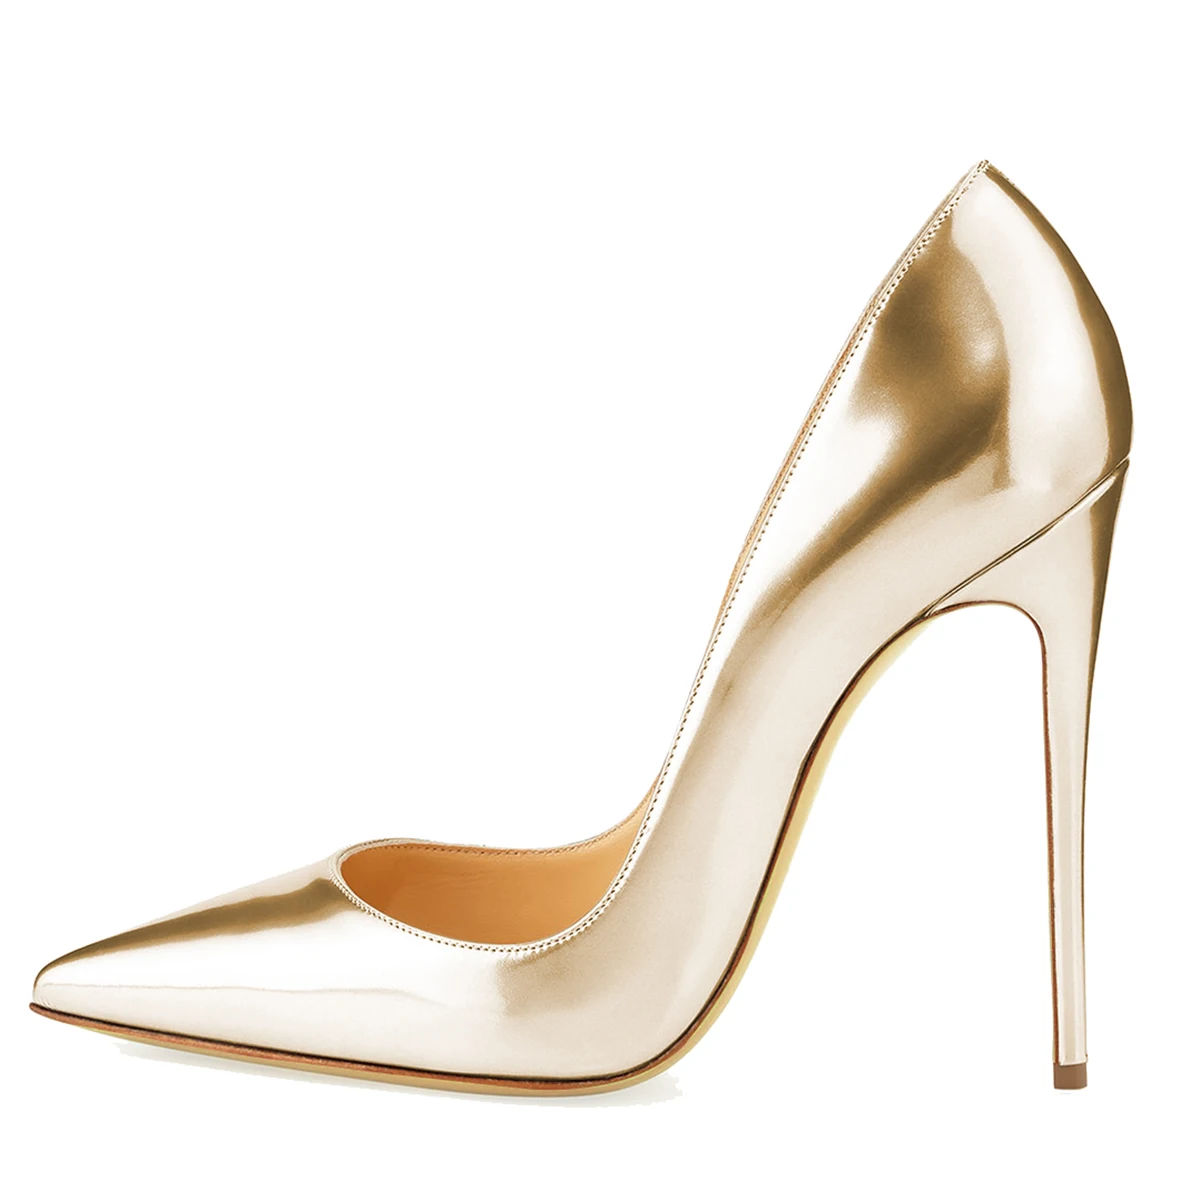 Aimirlly/женские туфли-лодочки с острым носком на высоком каблуке; свадебные модельные туфли без застежки из лакированной кожи; Цвет серебристый, золотистый; светильник